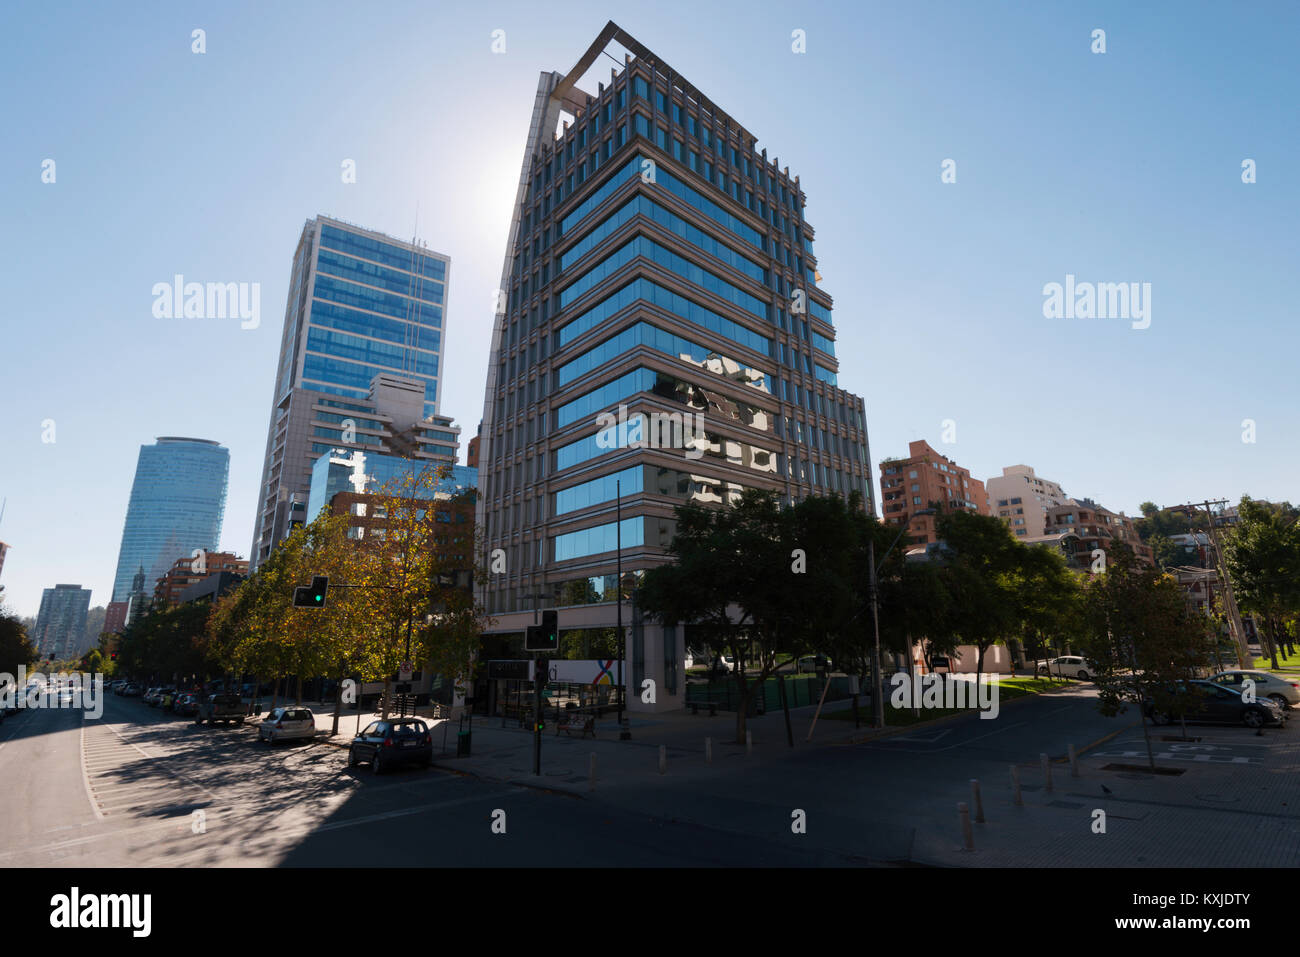 architecture of Santiago de Chile, Chile Stock Photo